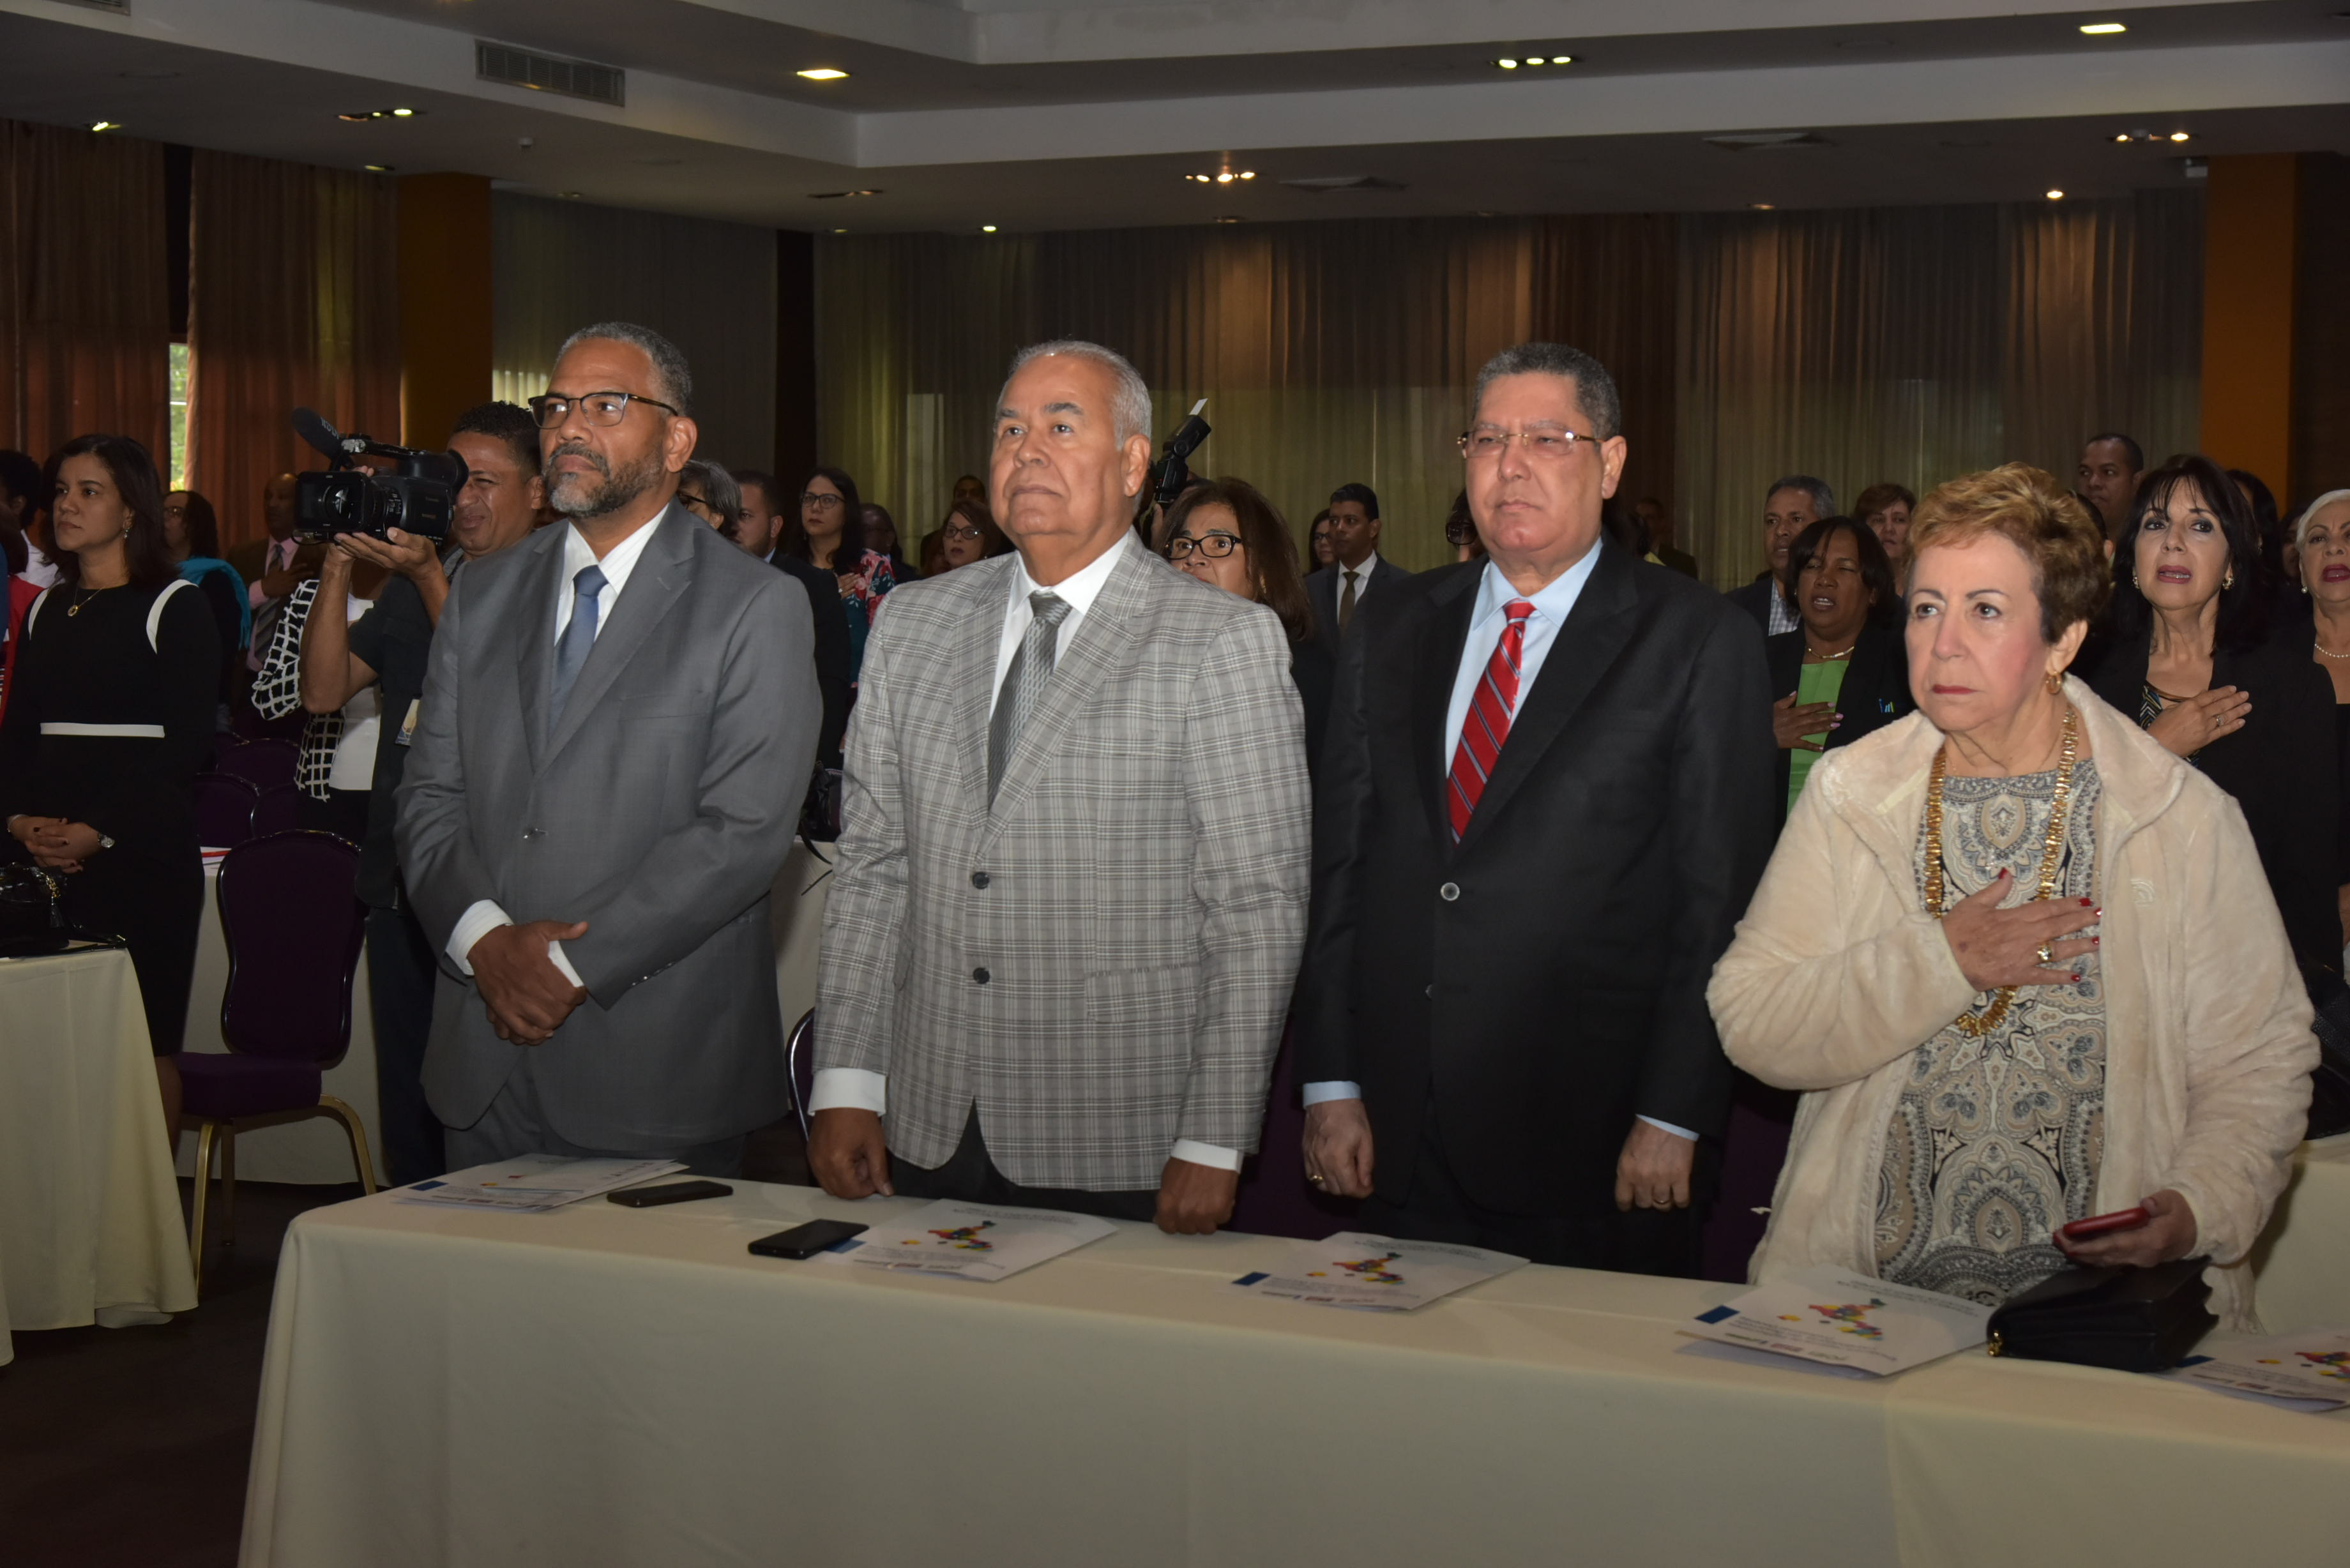  imagen Consultor chileno Jaime Veas durante conversatorio frente a los presentes en la conferencia. 